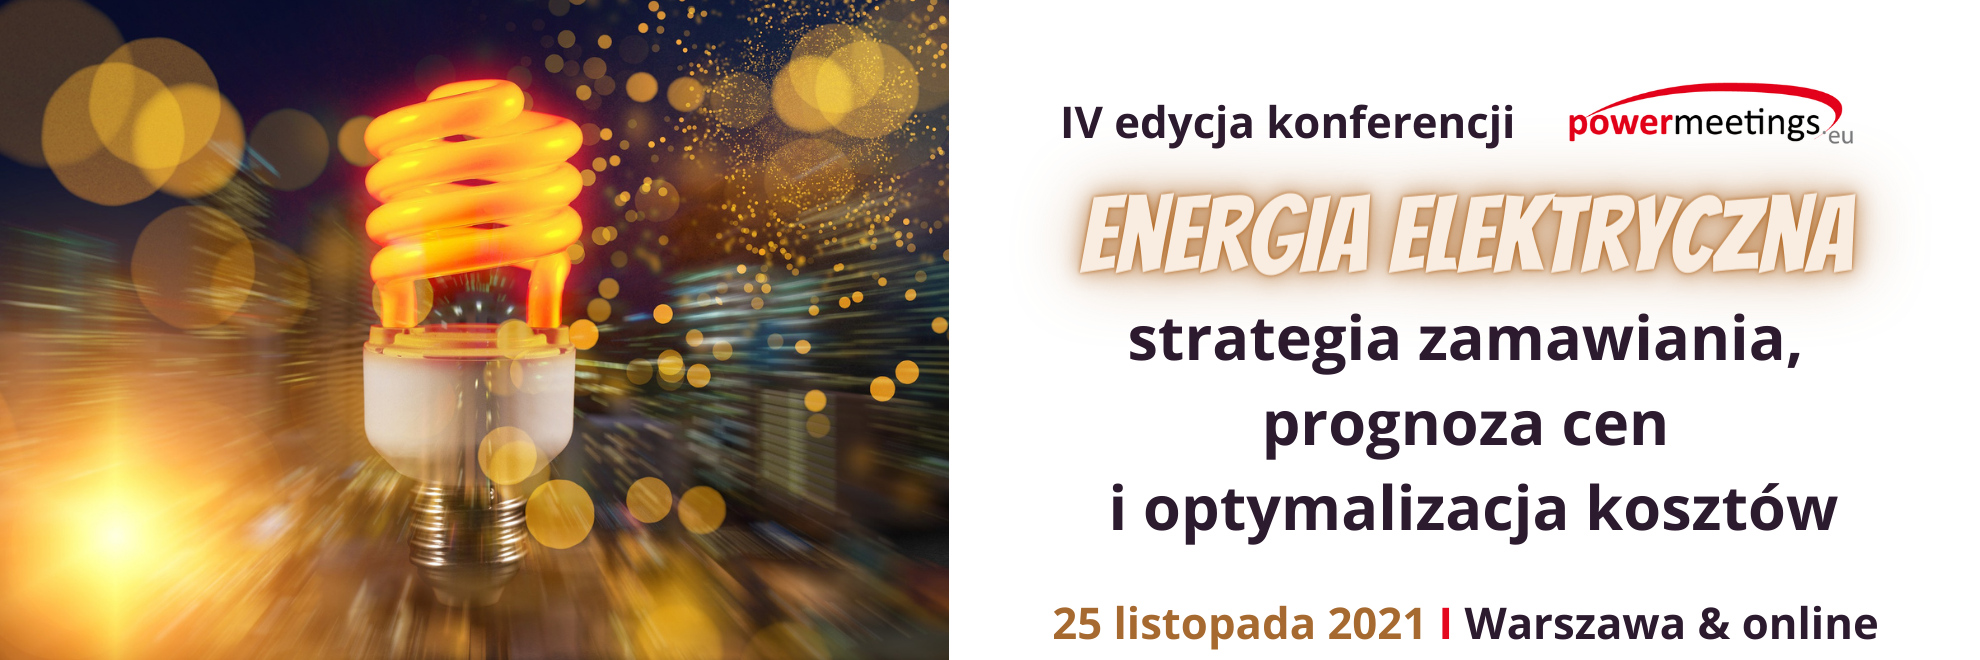 IV edycja konferencji Energia elektryczna w nieruchomościach - strategia zamawiania, prognoza cen i optymalizacja kosztów